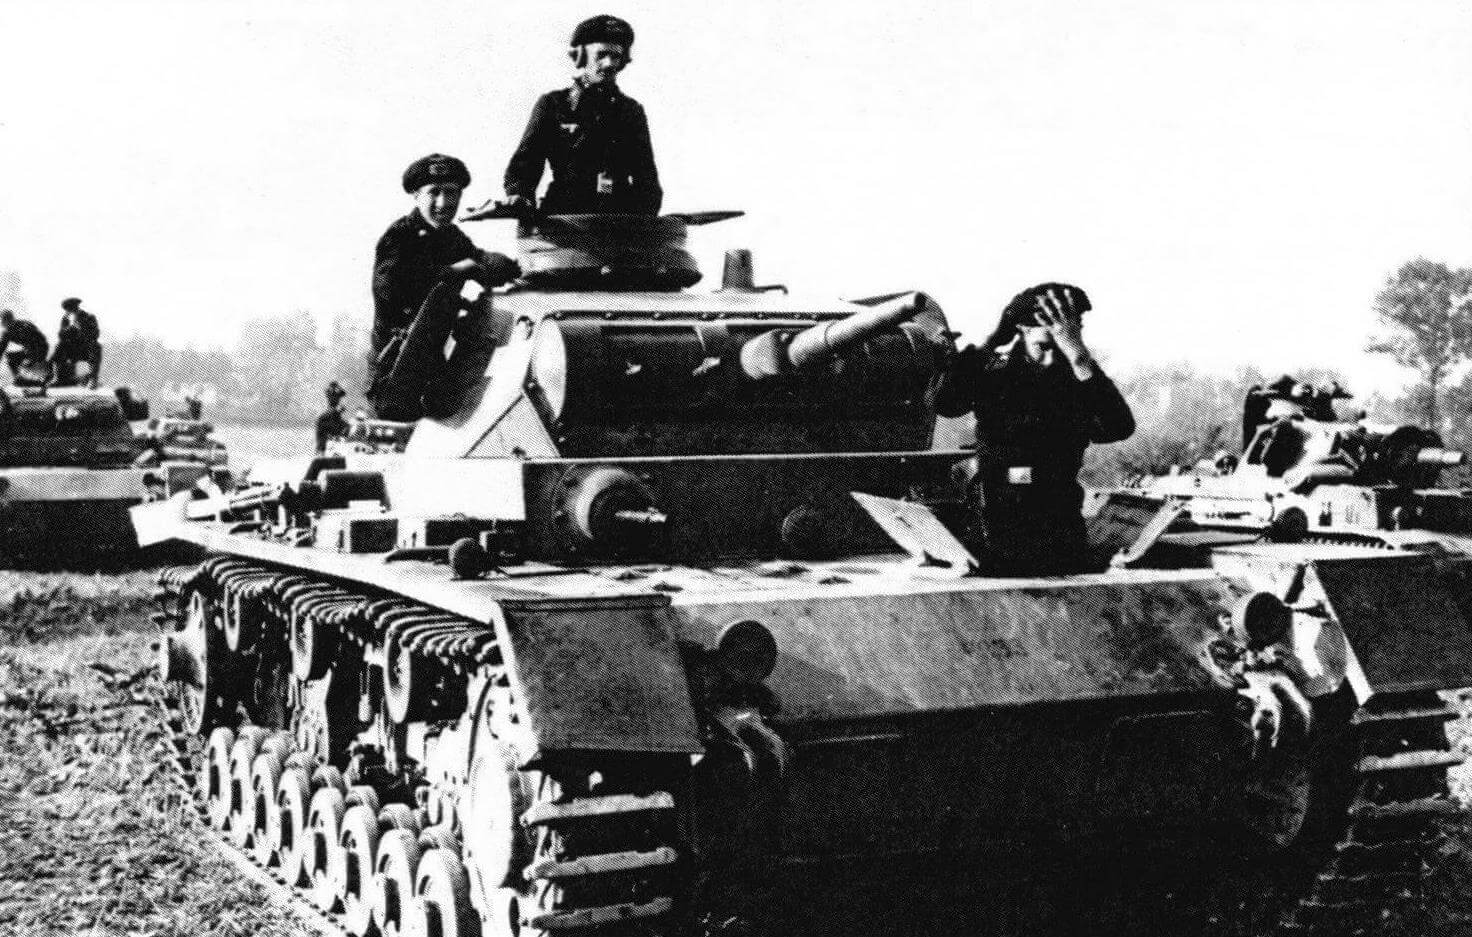 Pz.III Ausf.D. Польша, сентябрь 1939 года. Теоретически механик-водитель и стрелок-радист могли пользоваться для посадки в танк люками доступа к агрегатам трансмиссии. Однако, совершенно очевидно, что в боевой обстановке сделать это было практически невозможно